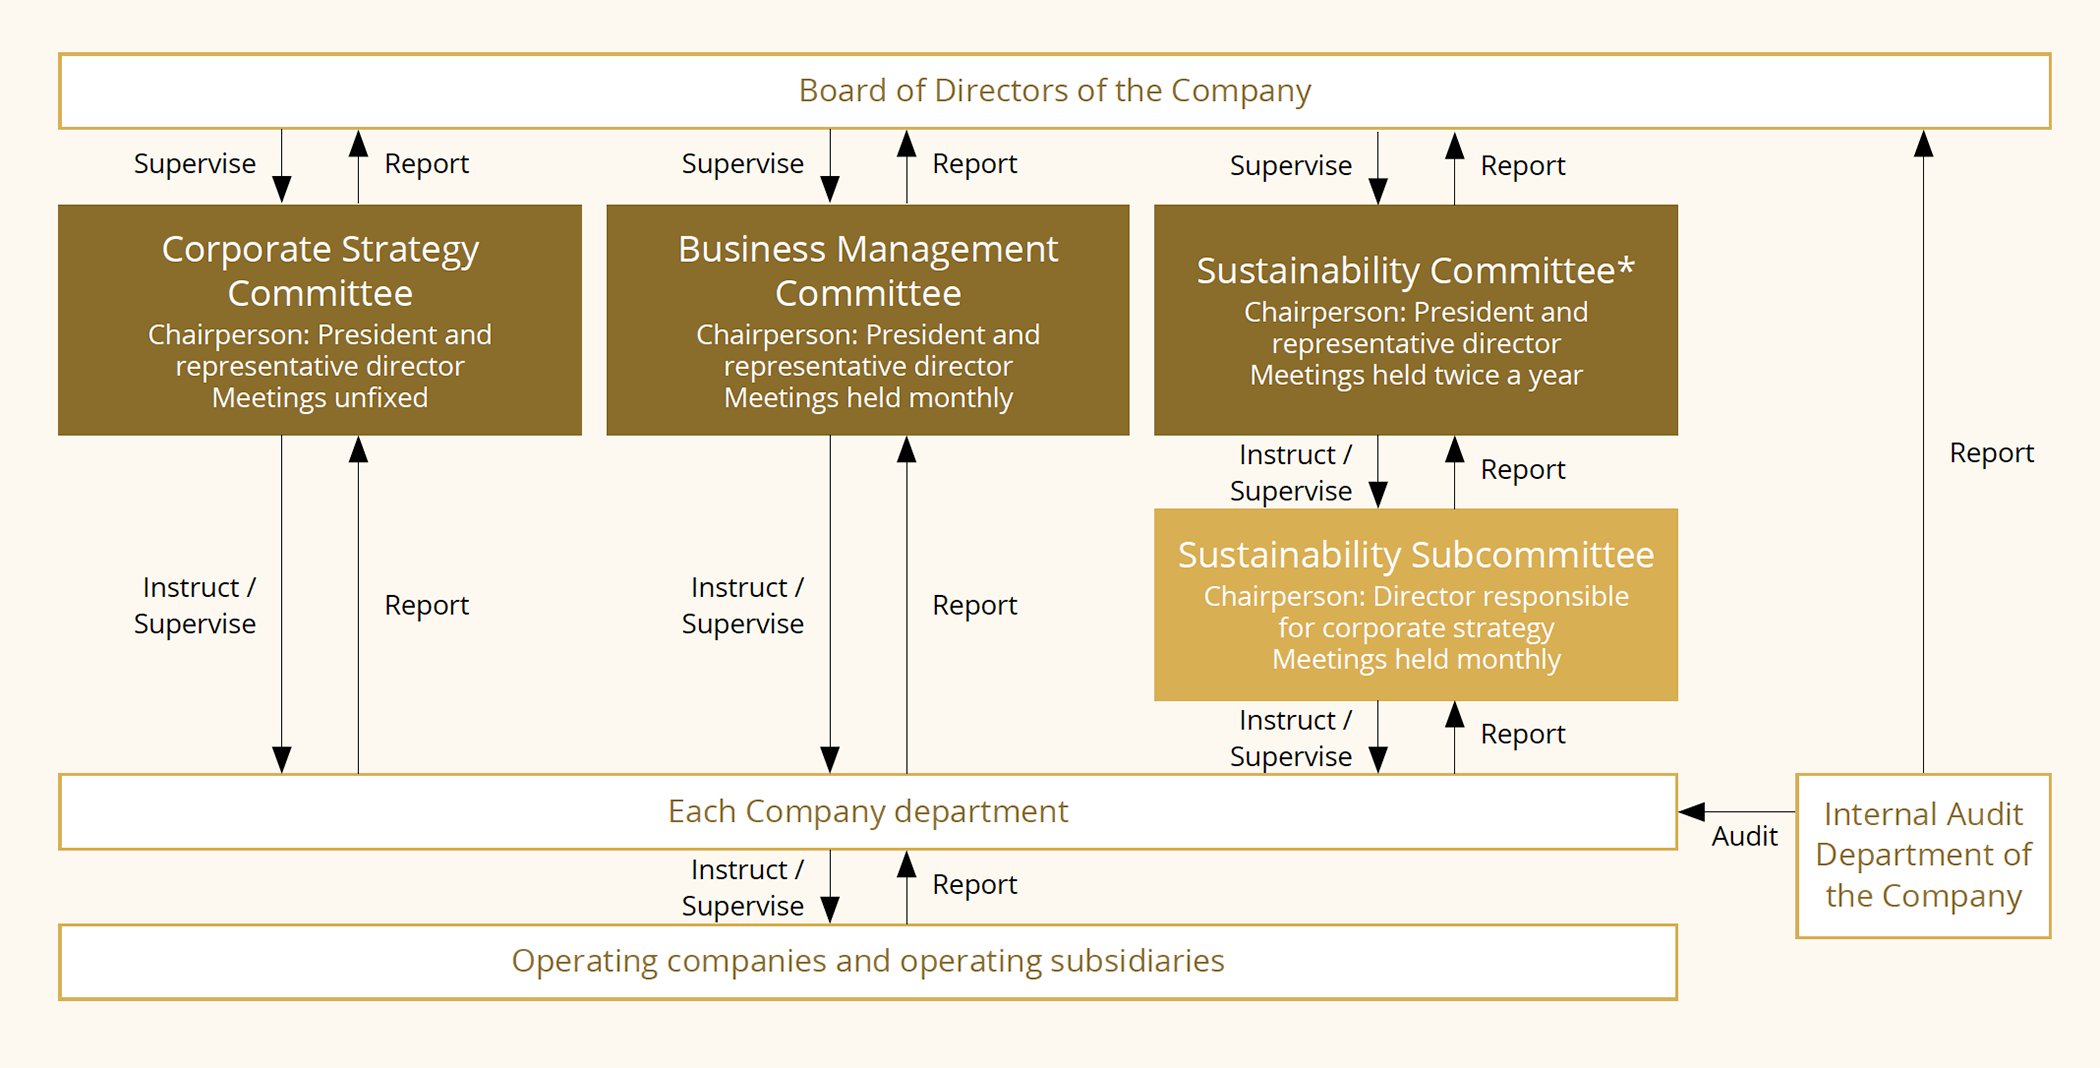 Sustainability Promotion Framework